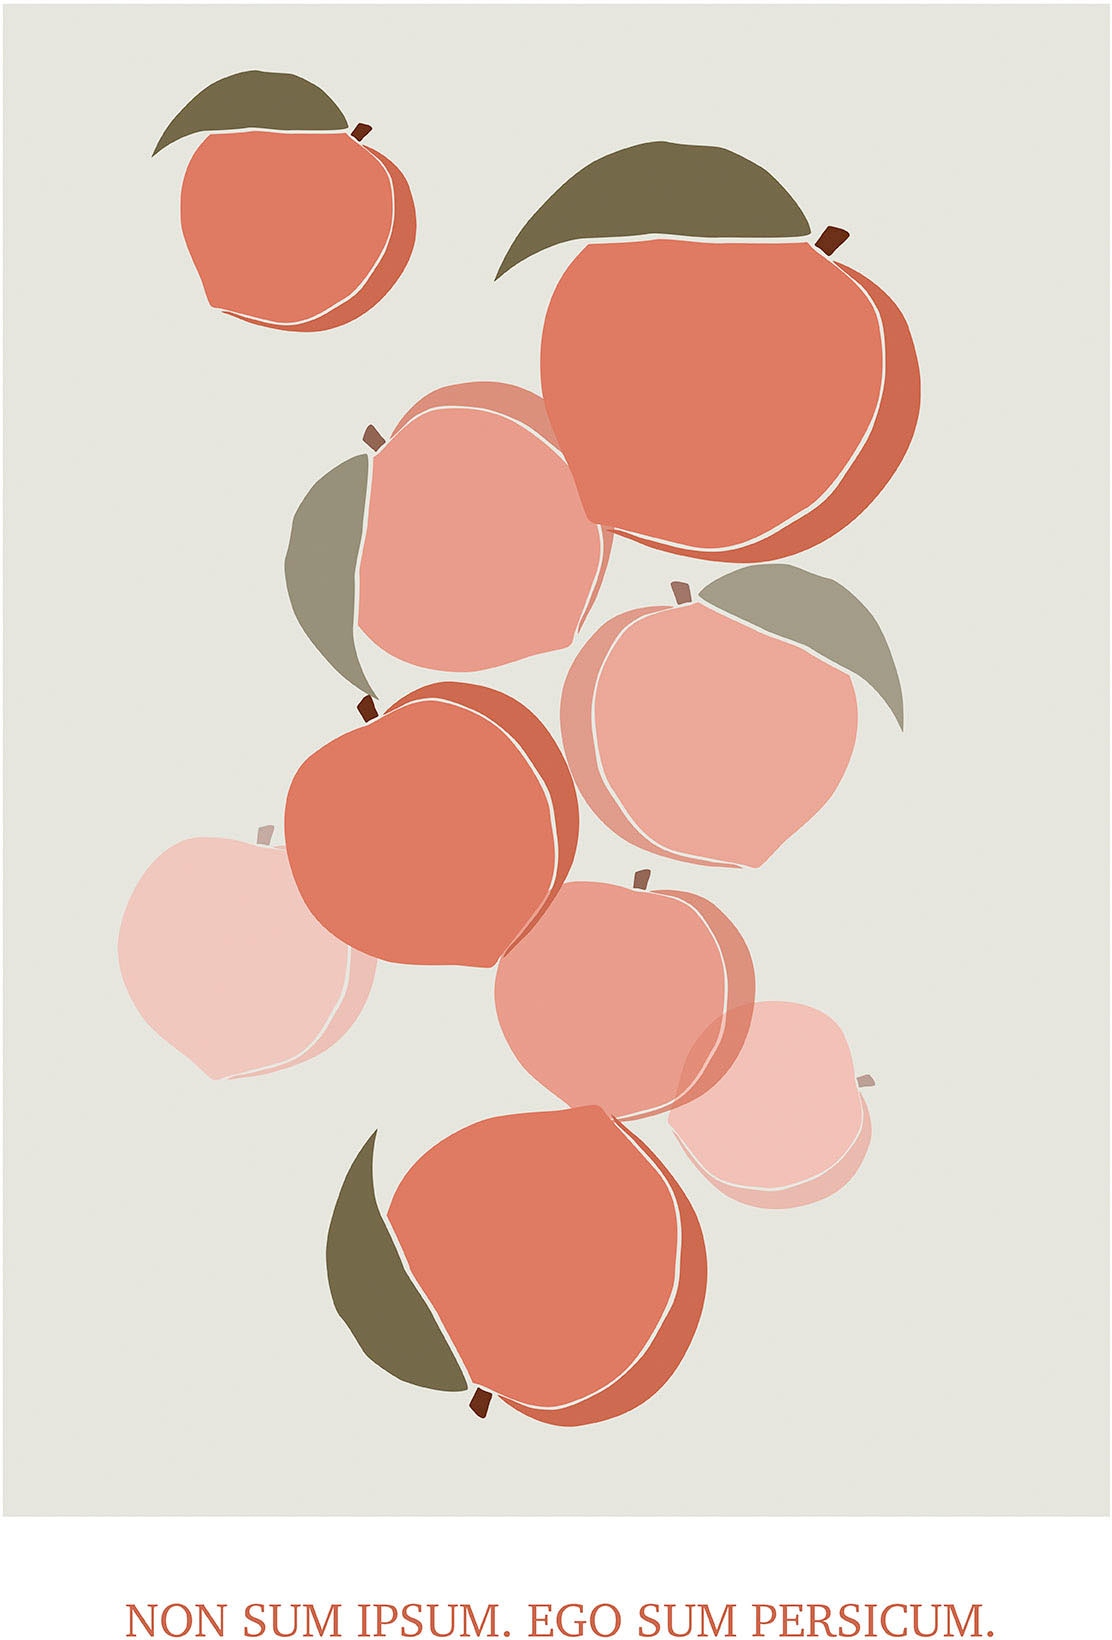 Komar Wandbild »Cultivated Peaches«, (1 St.), Deutsches Premium-Poster Fotopapier mit seidenmatter Oberfläche und hoher Lichtbeständigkeit. Für fotorealistische Drucke mit gestochen scharfen Details und hervorragender Farbbrillanz.